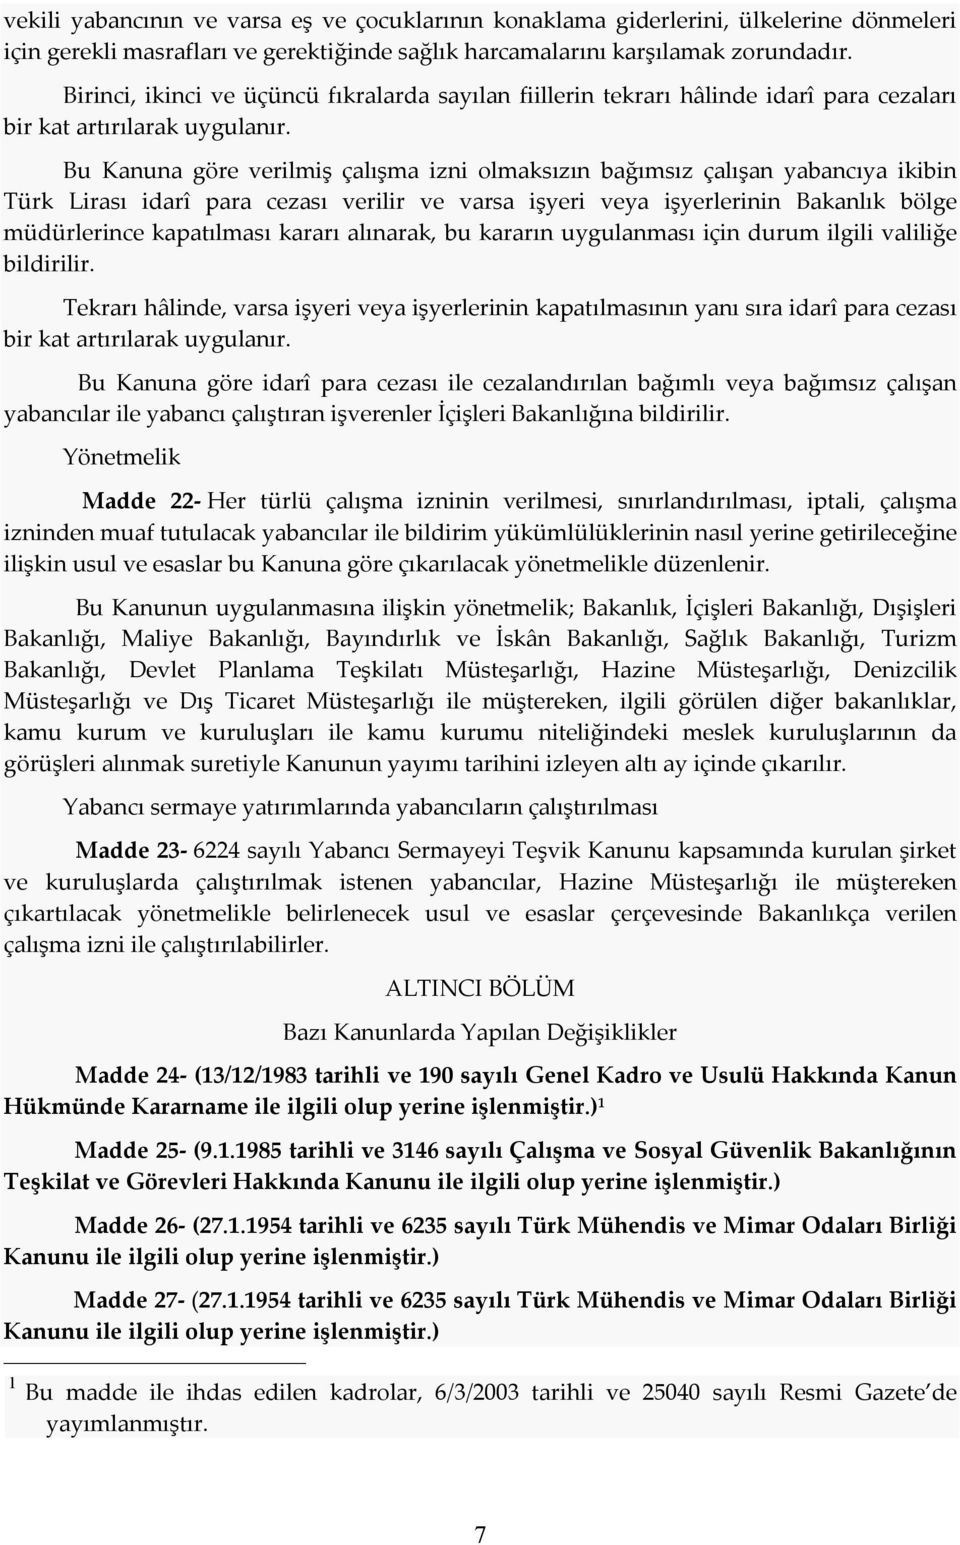 Bu Kanuna göre verilmiş çalışma izni olmaksızın bağımsız çalışan yabancıya ikibin Türk Lirası idarî para cezası verilir ve varsa işyeri veya işyerlerinin Bakanlık bölge müdürlerince kapatılması